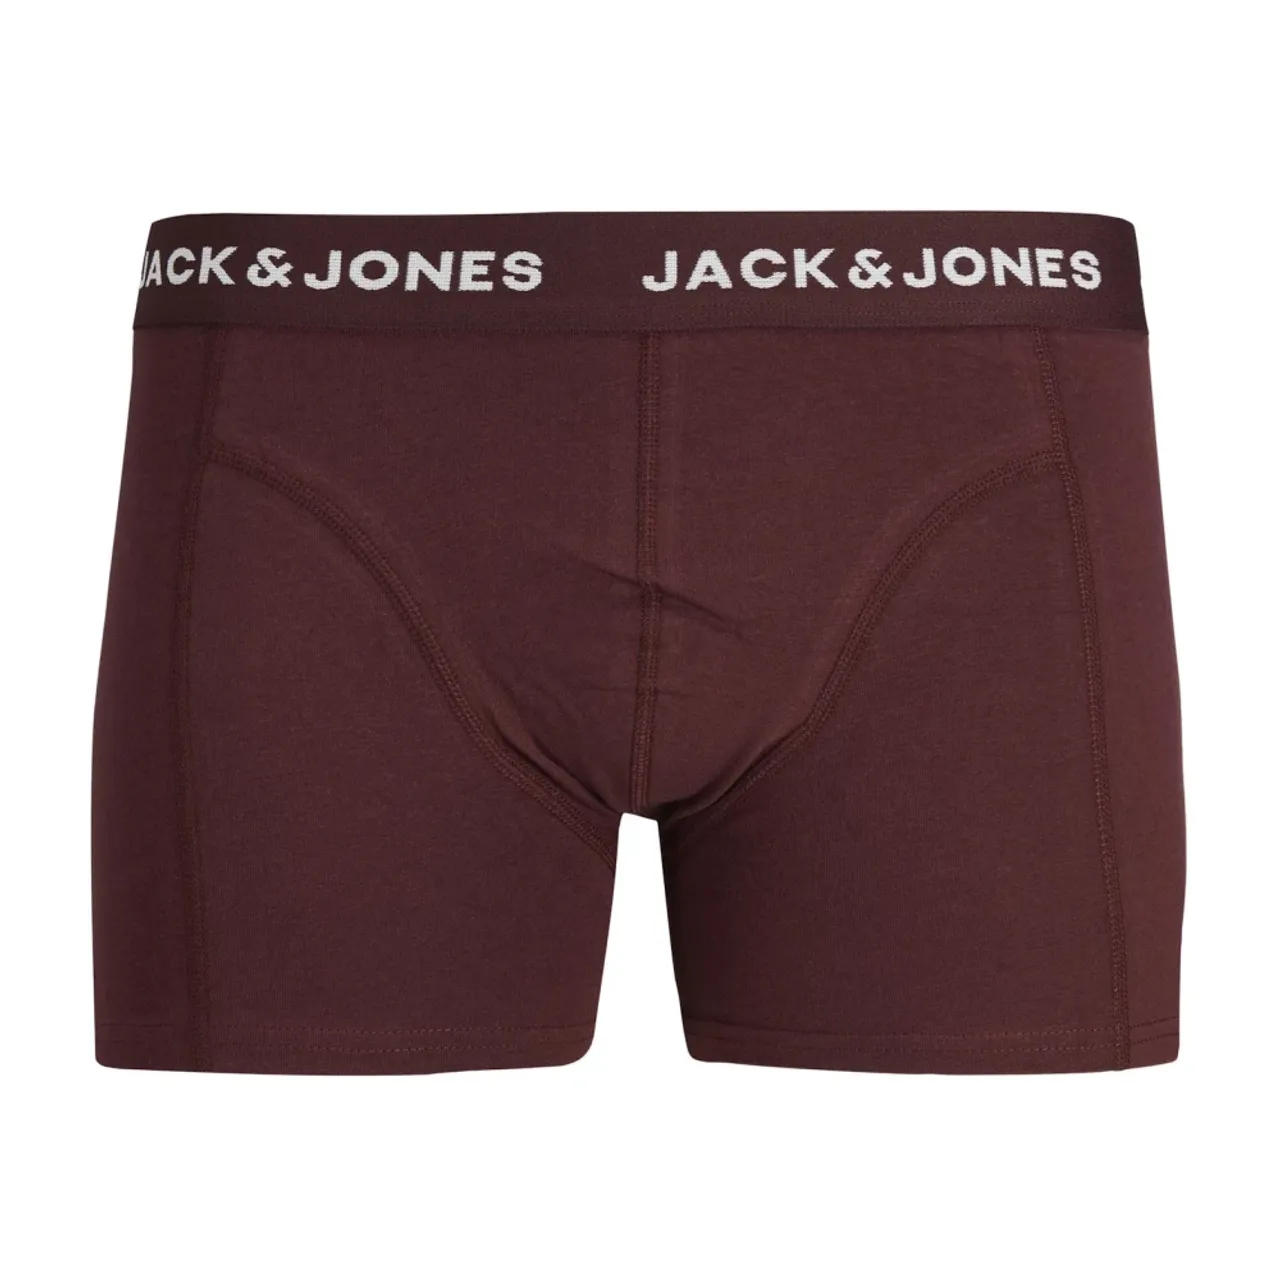 Herren Boxershorts 5er-Pack Jack & Jones